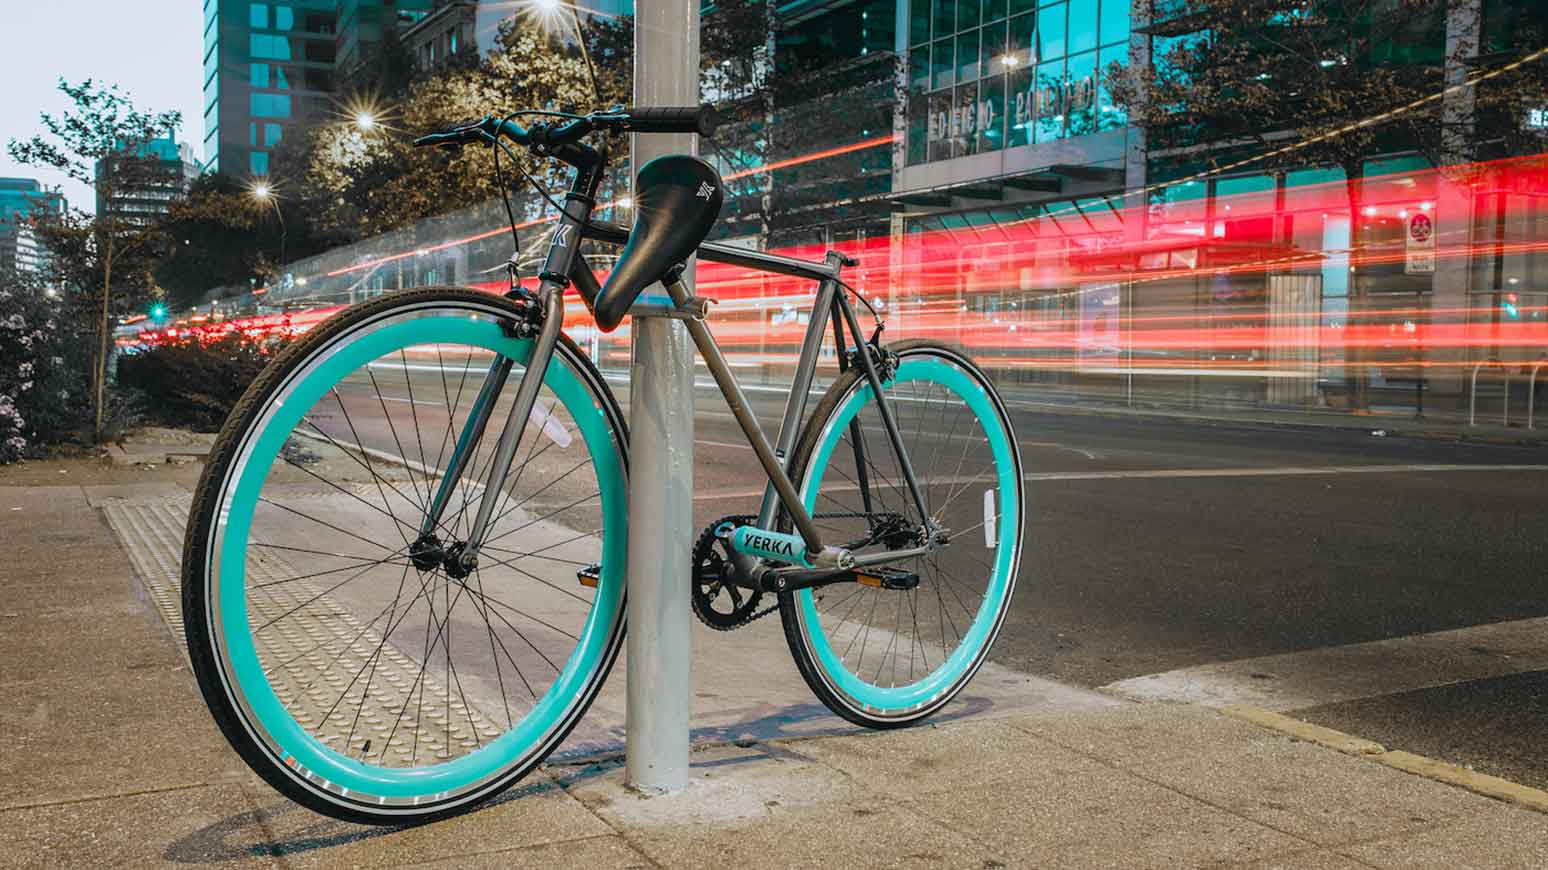 Yerka Bikes stellt diebstahlsicheres Fahrrad vor